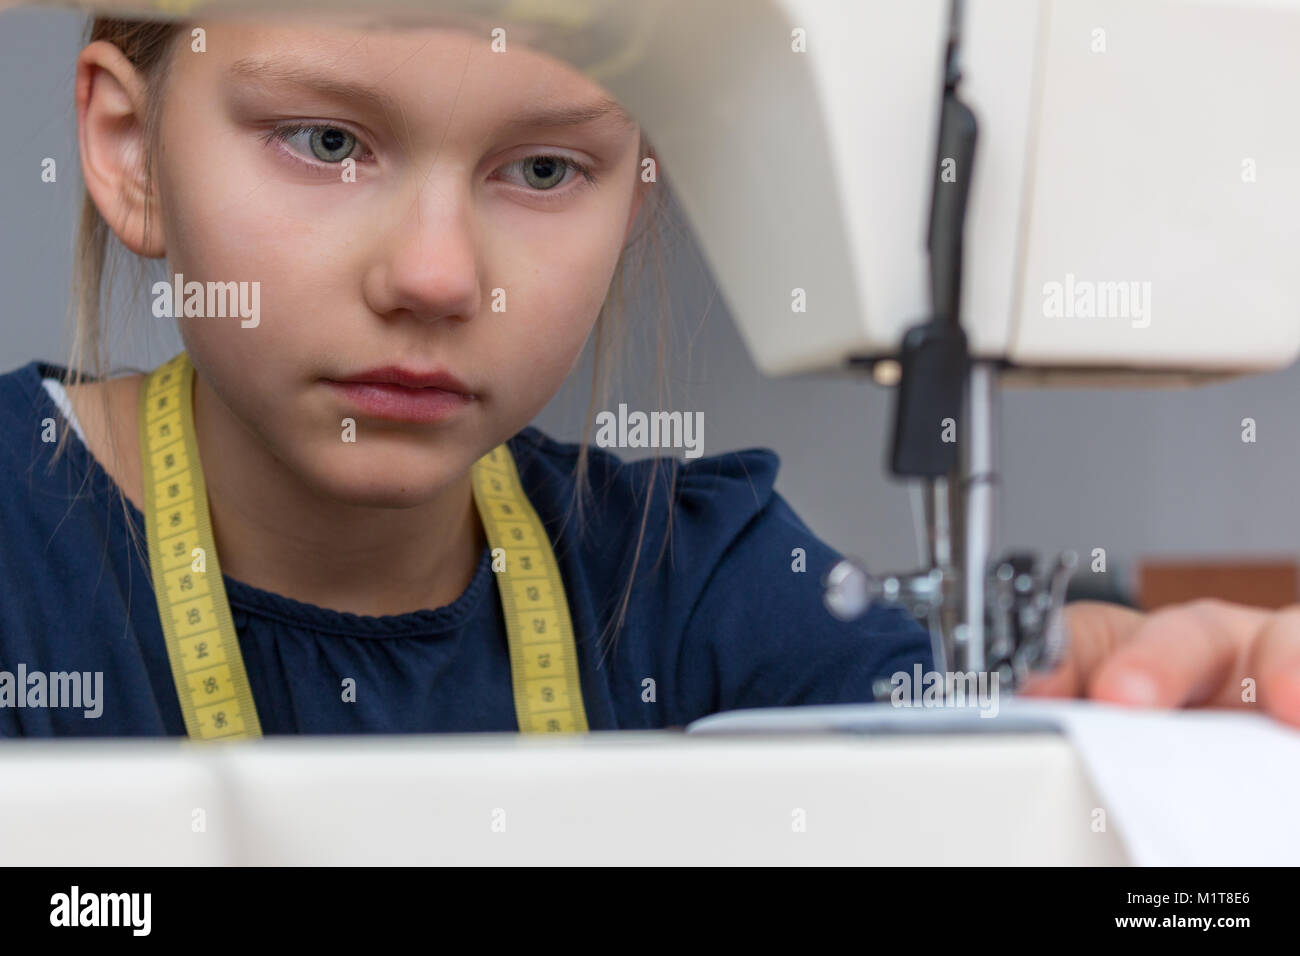 Retrato de una niña de 8 años que es coser con máquina de coser. Foto de stock